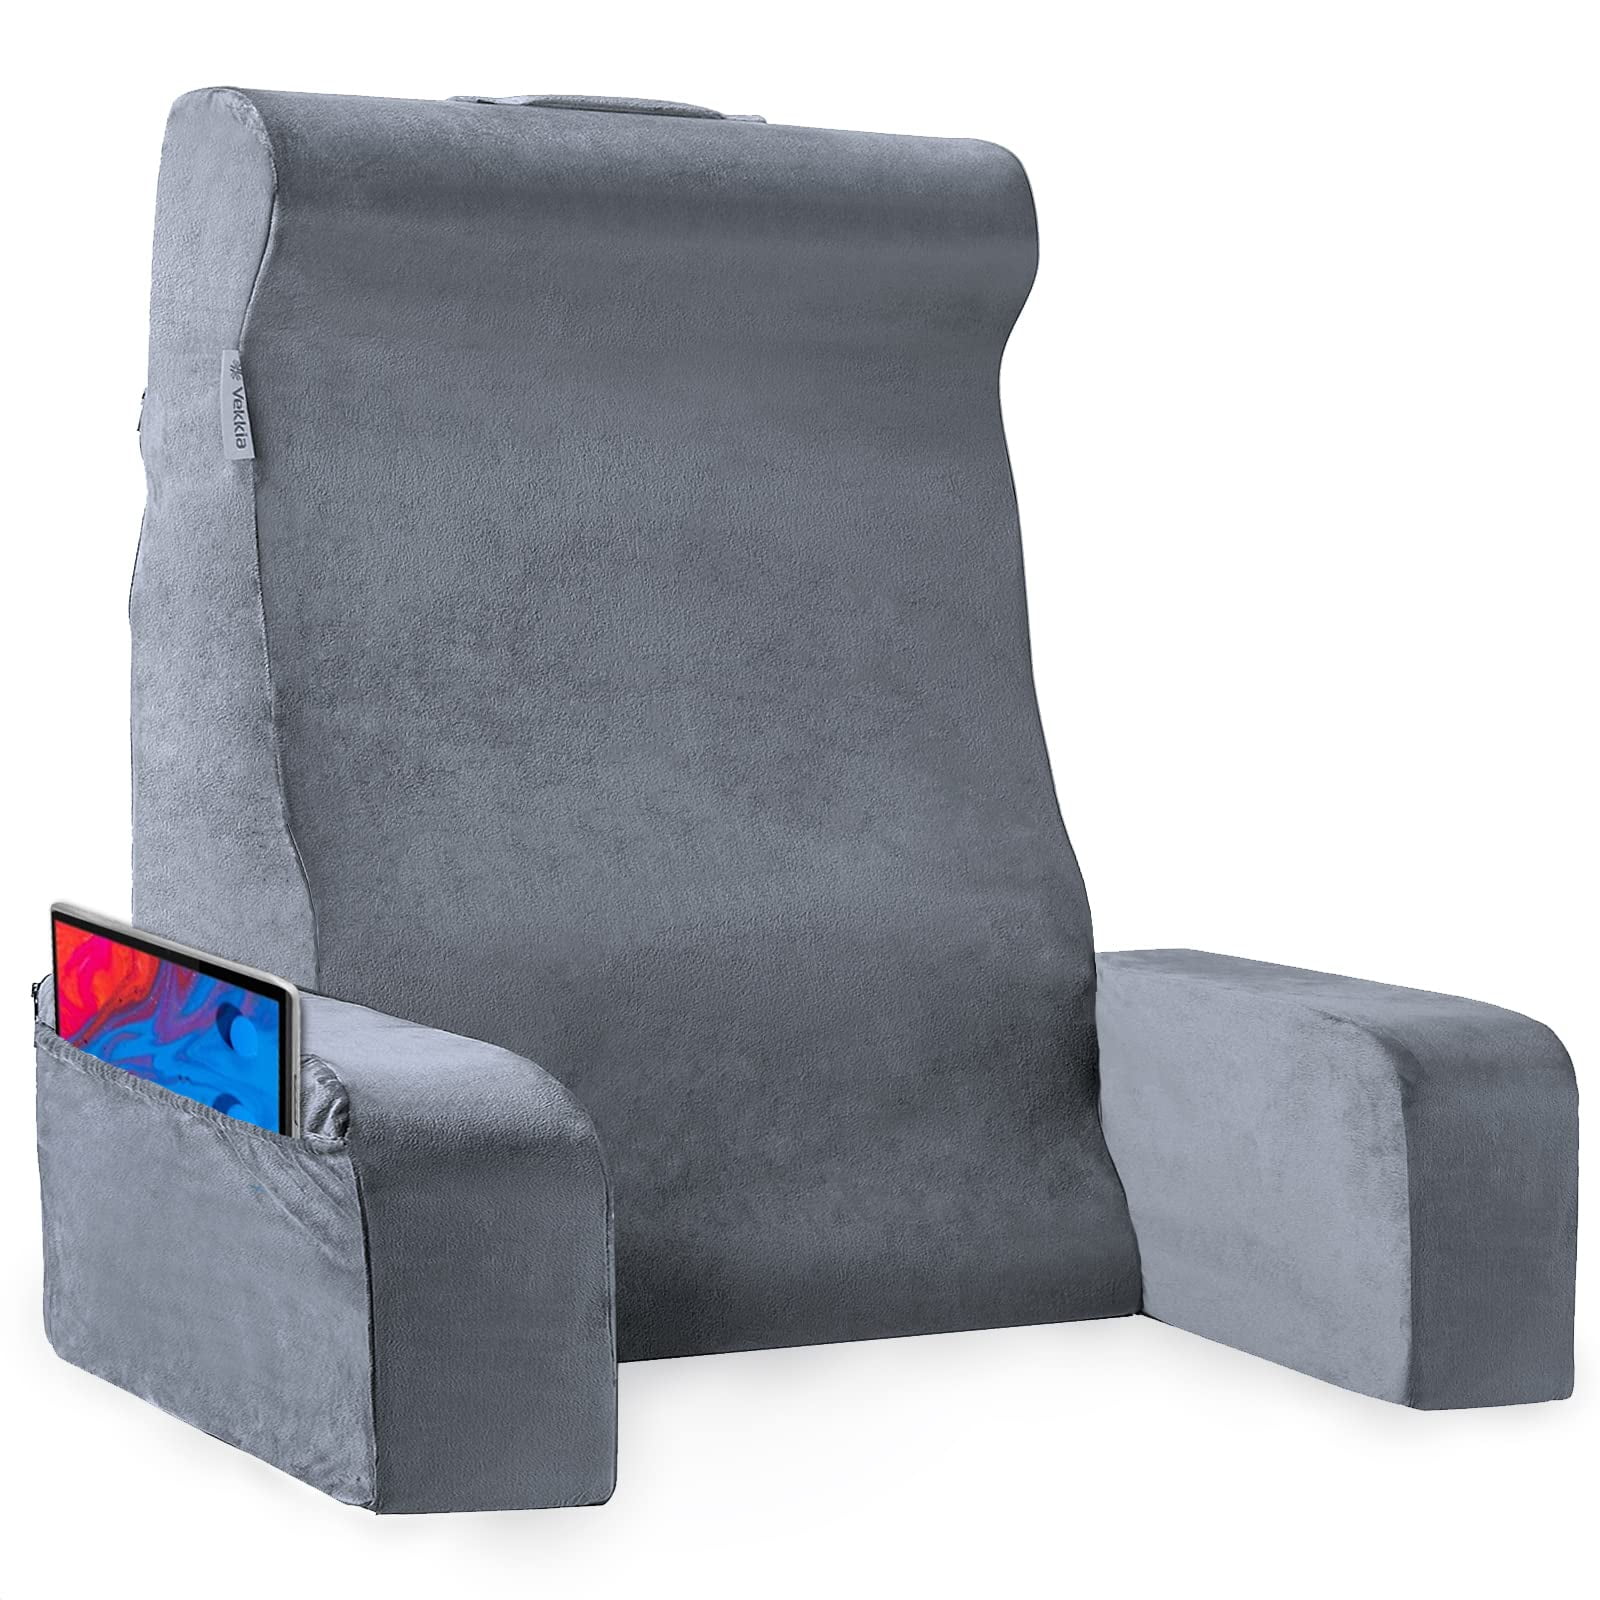 Sukimakura - The waist pillow for reclining in the car by GUIDANCE  International — Kickstarter